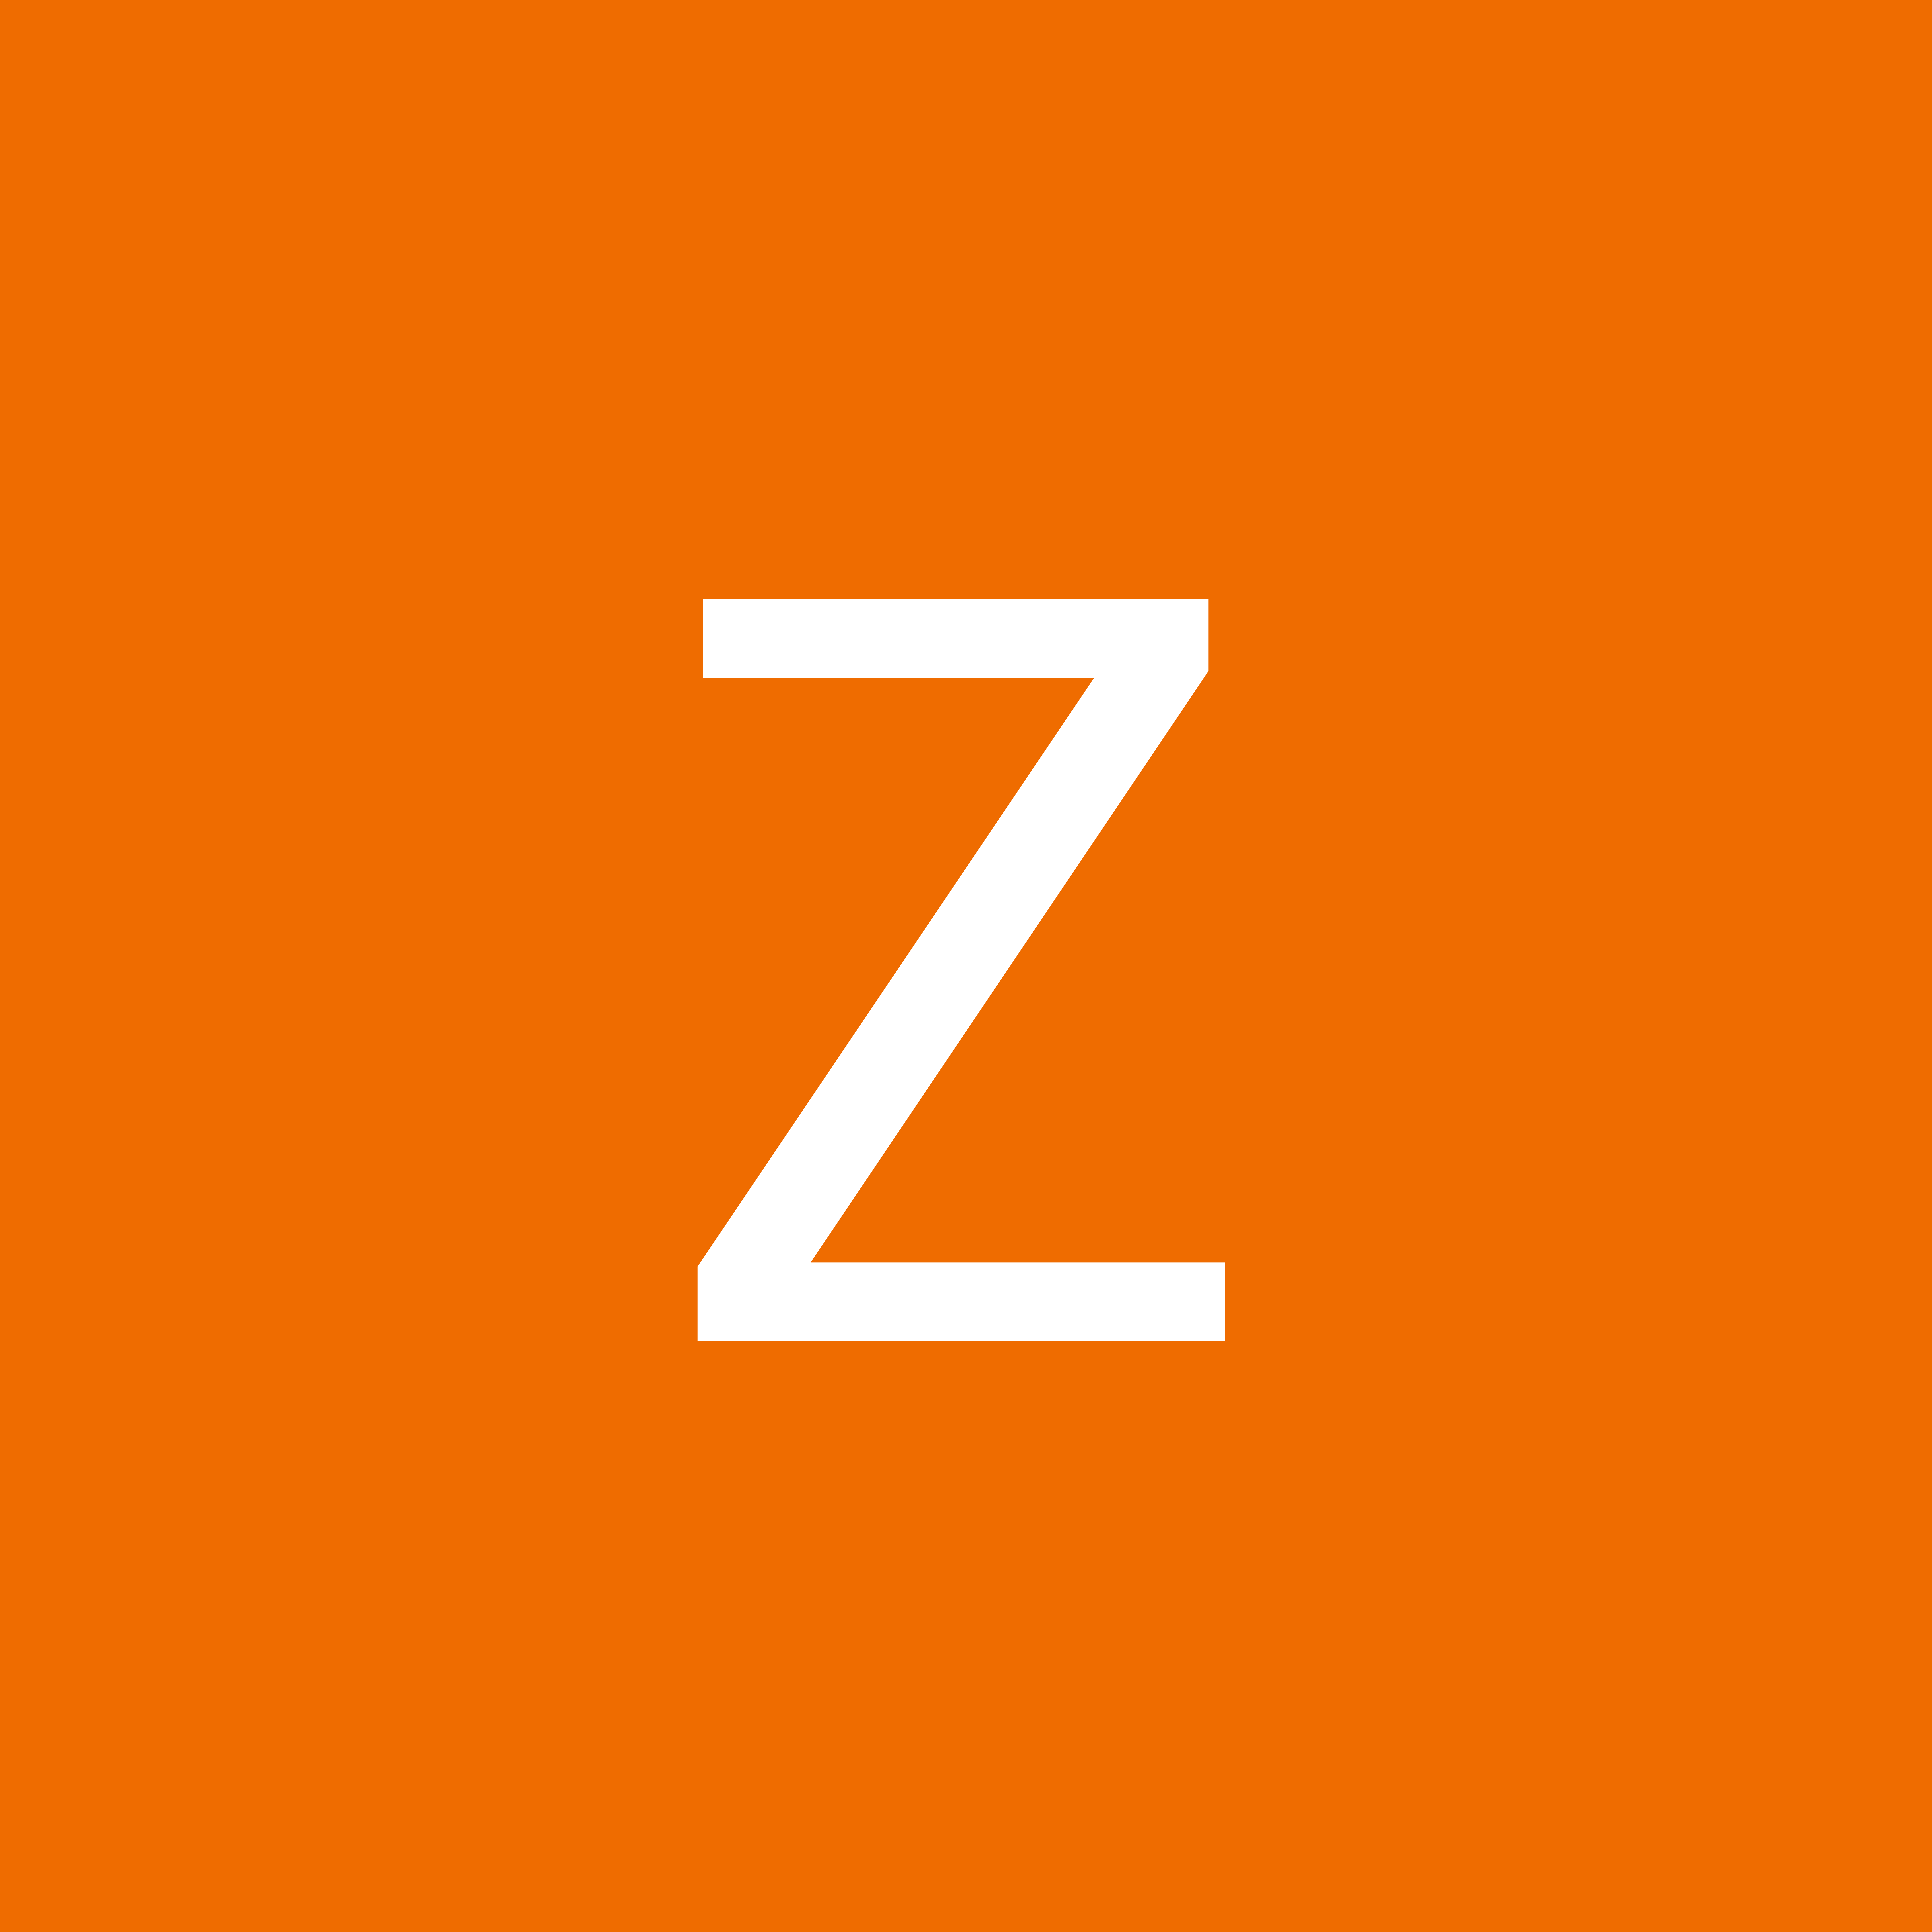 Zeing Zang